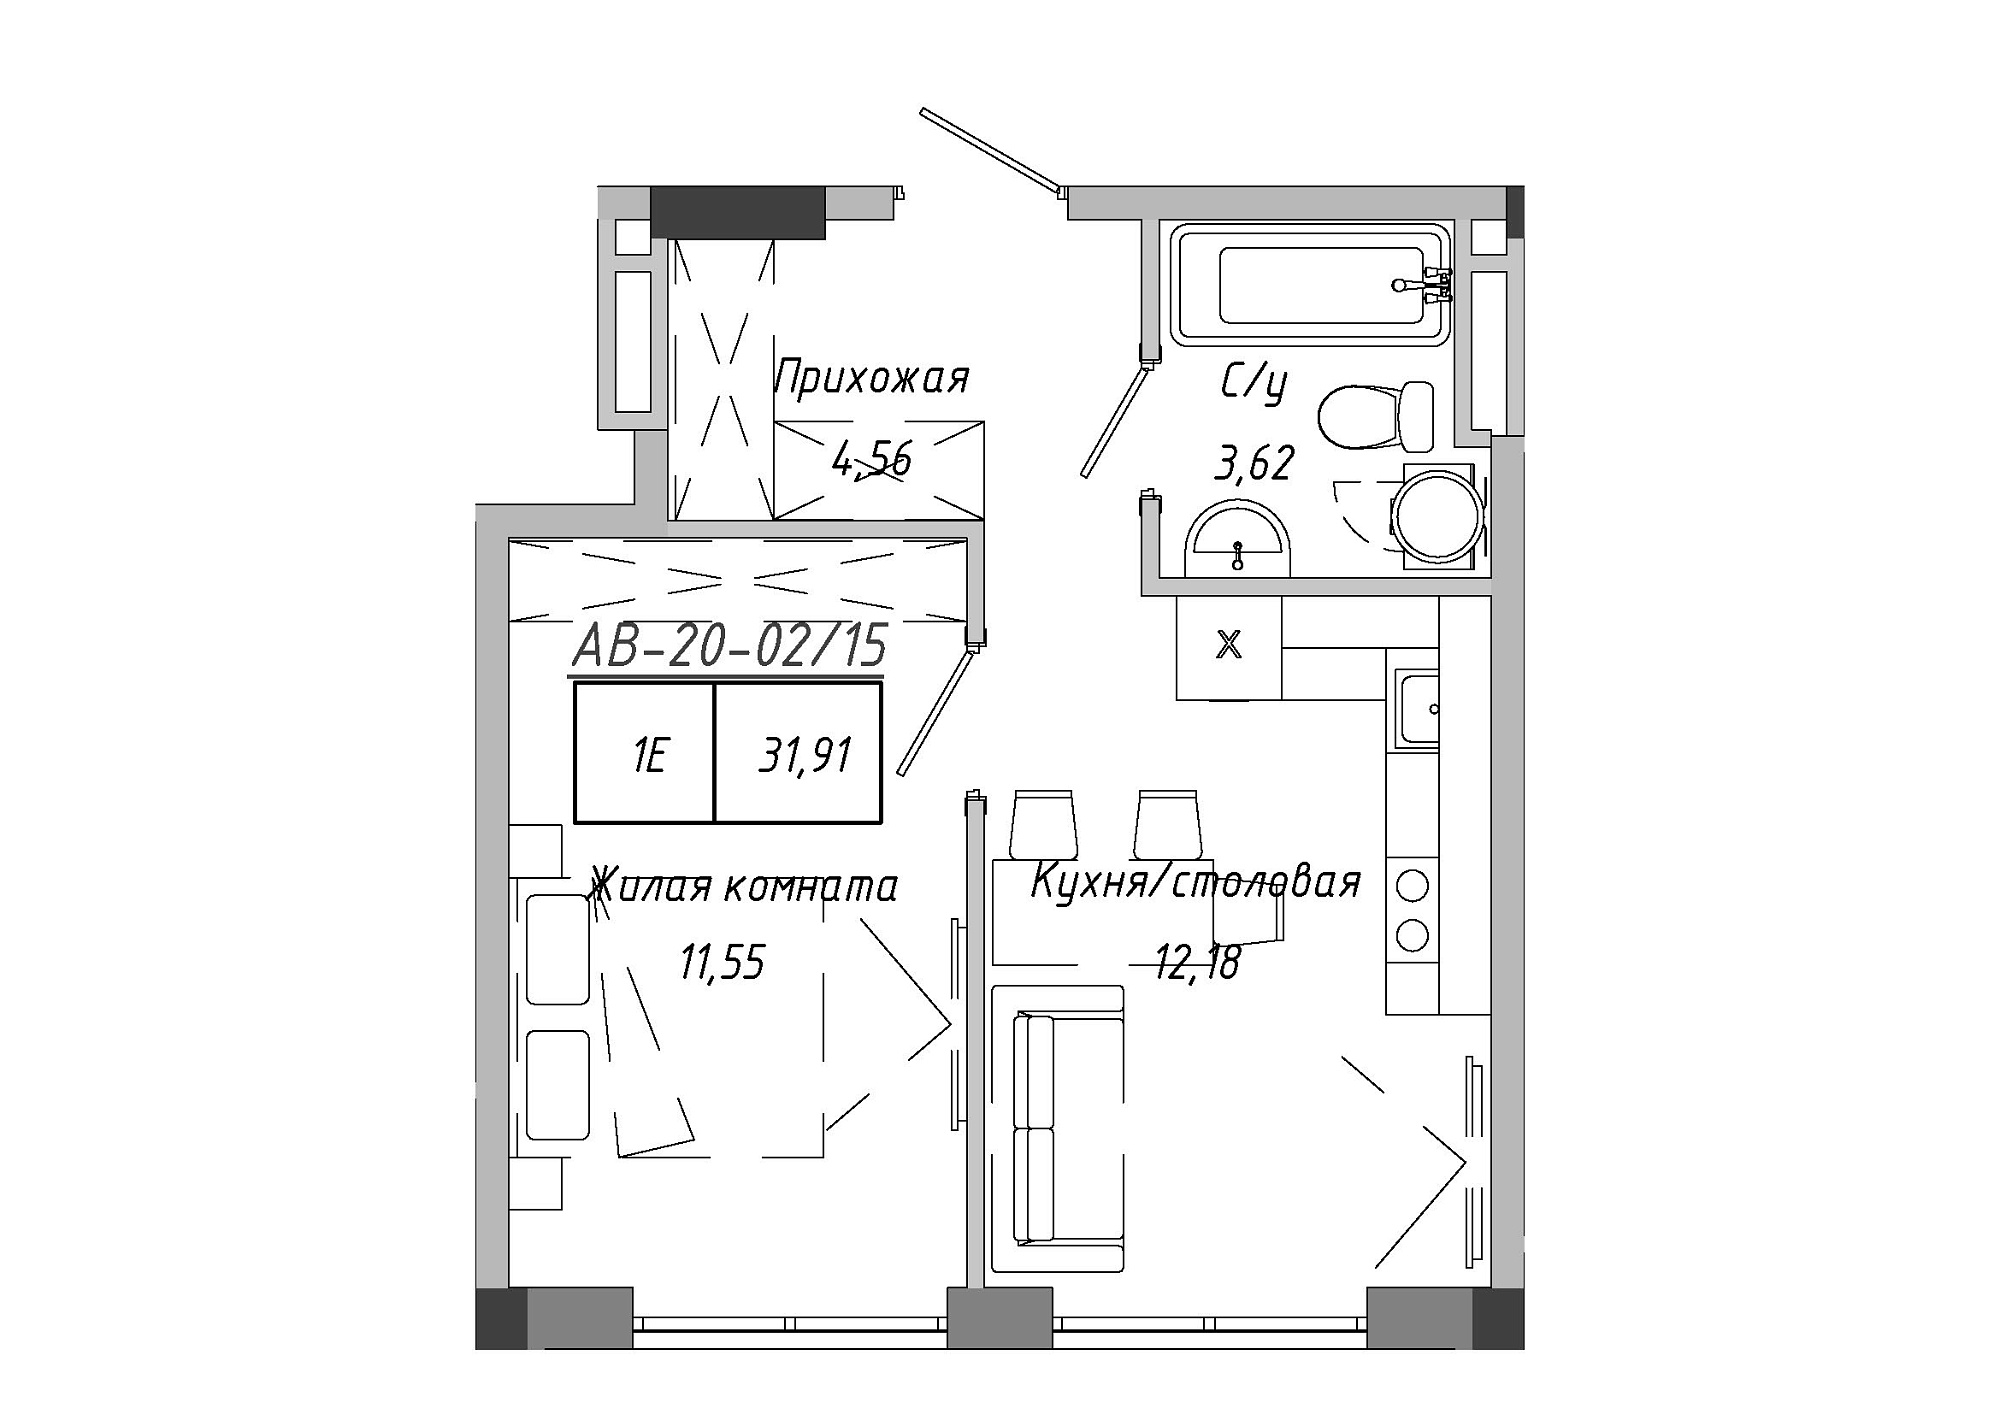 Планировка 1-к квартира площей 31.51м2, AB-20-02/00015.